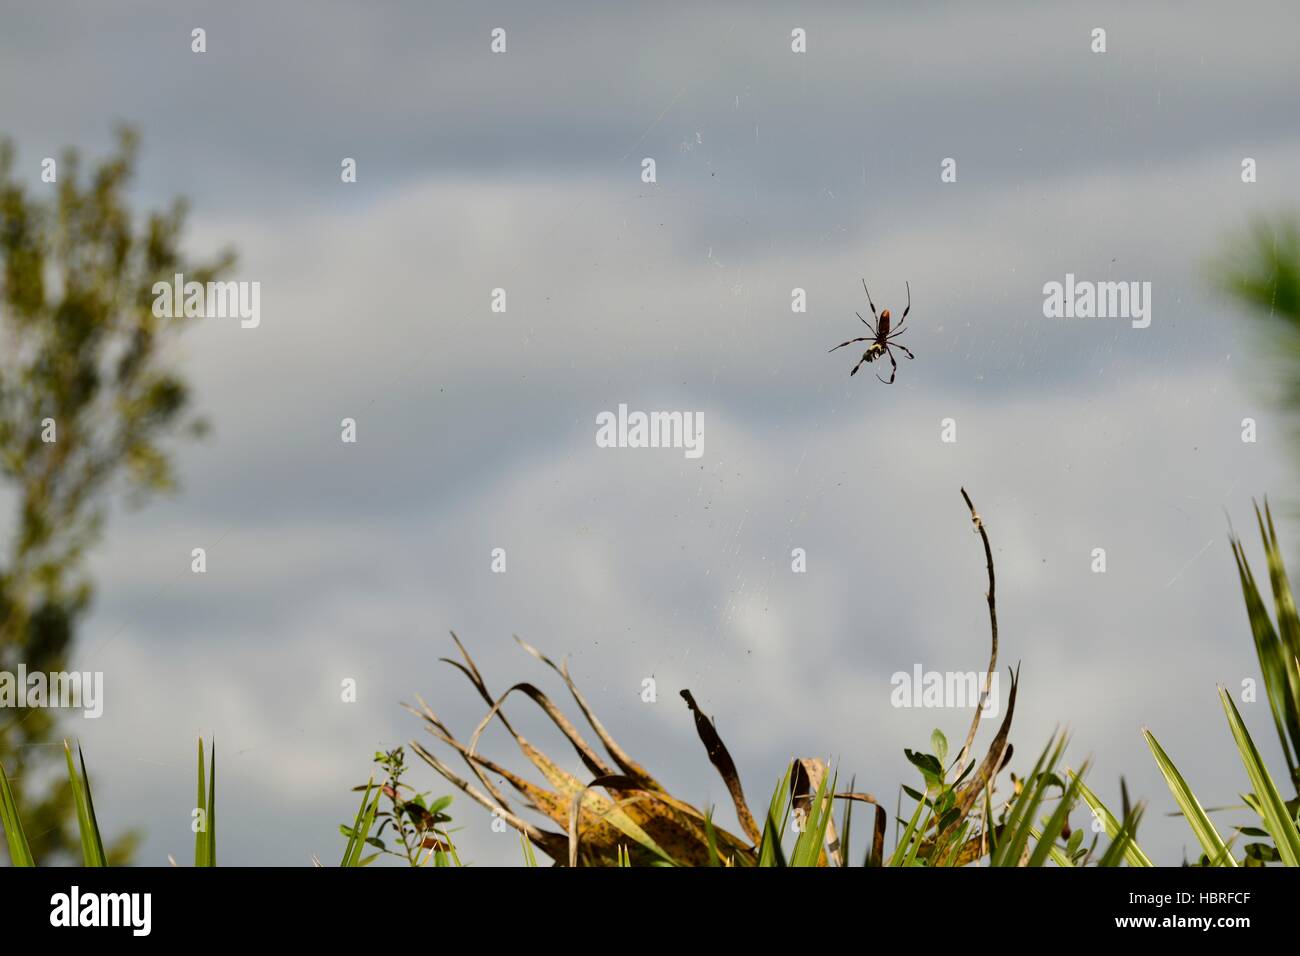 L'araignée banane effrayant aussi connu sous le nom de golden silk orb weaver spider dans un site web à seminole state forest en Floride centrale. Banque D'Images